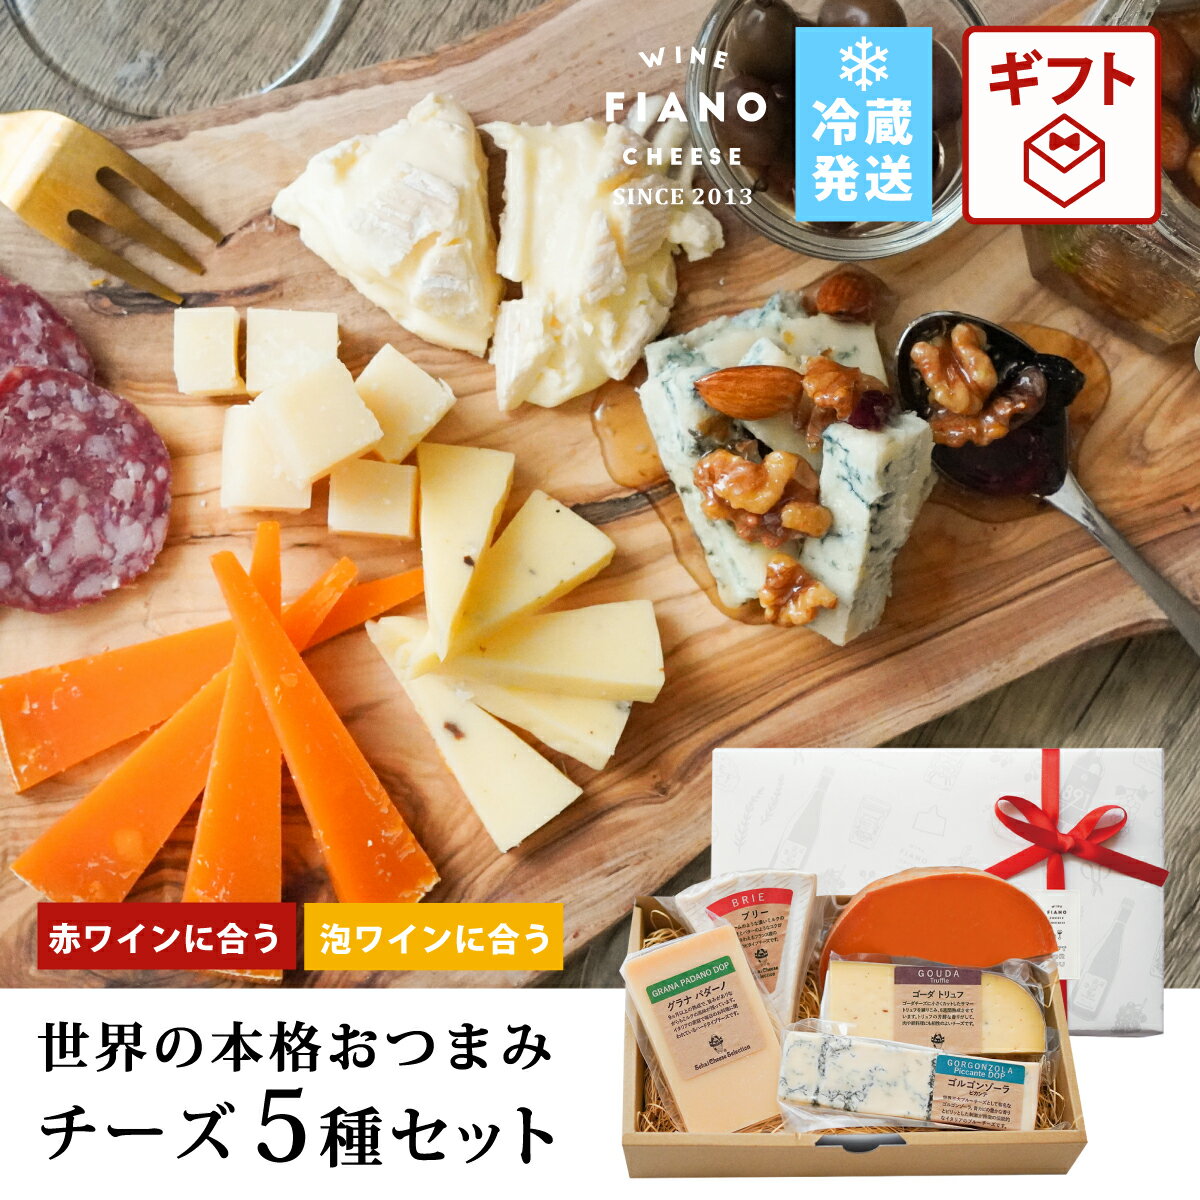 チーズ ギフト プレゼント 5種類おつまみ 詰め...の商品画像